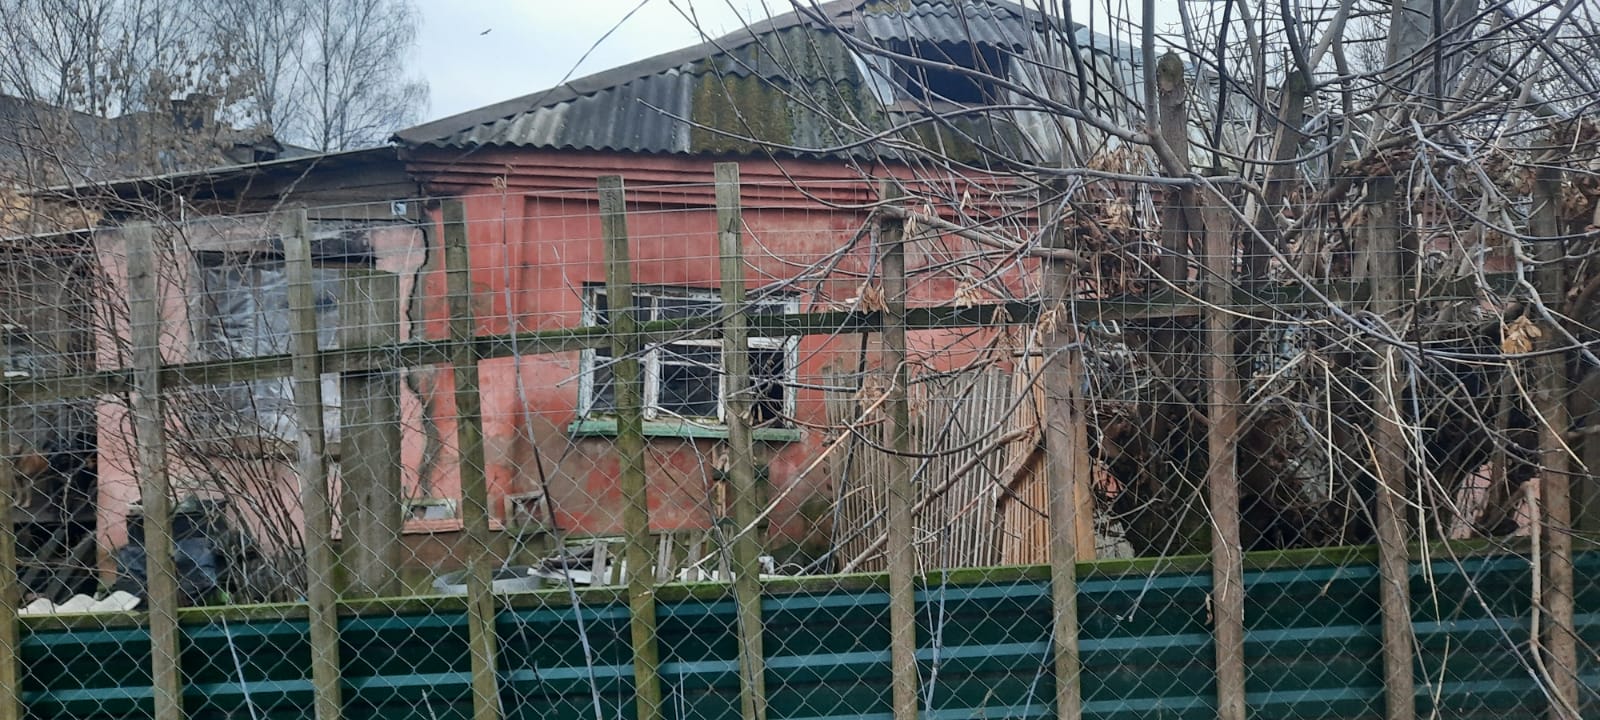 В Смоленске в домашнем приюте для собак обрушилась крыша. Женщина успела спастись